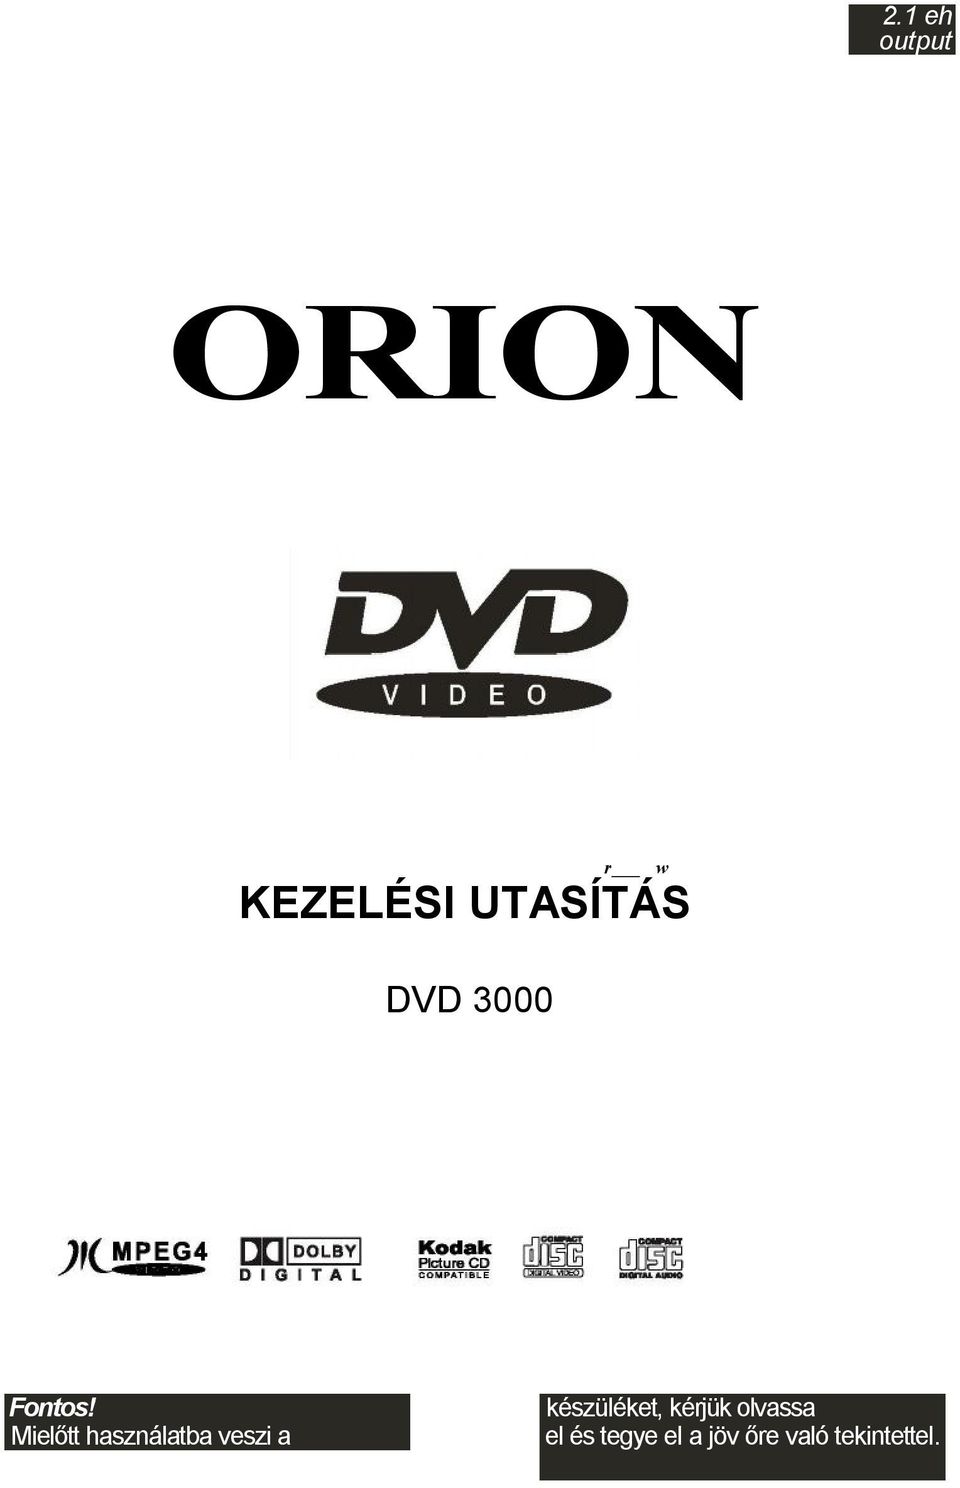 ORION KEZELÉSI UTASÍTÁS DVD eh output. Fontos! Mielőtt használatba veszi a  - PDF Free Download